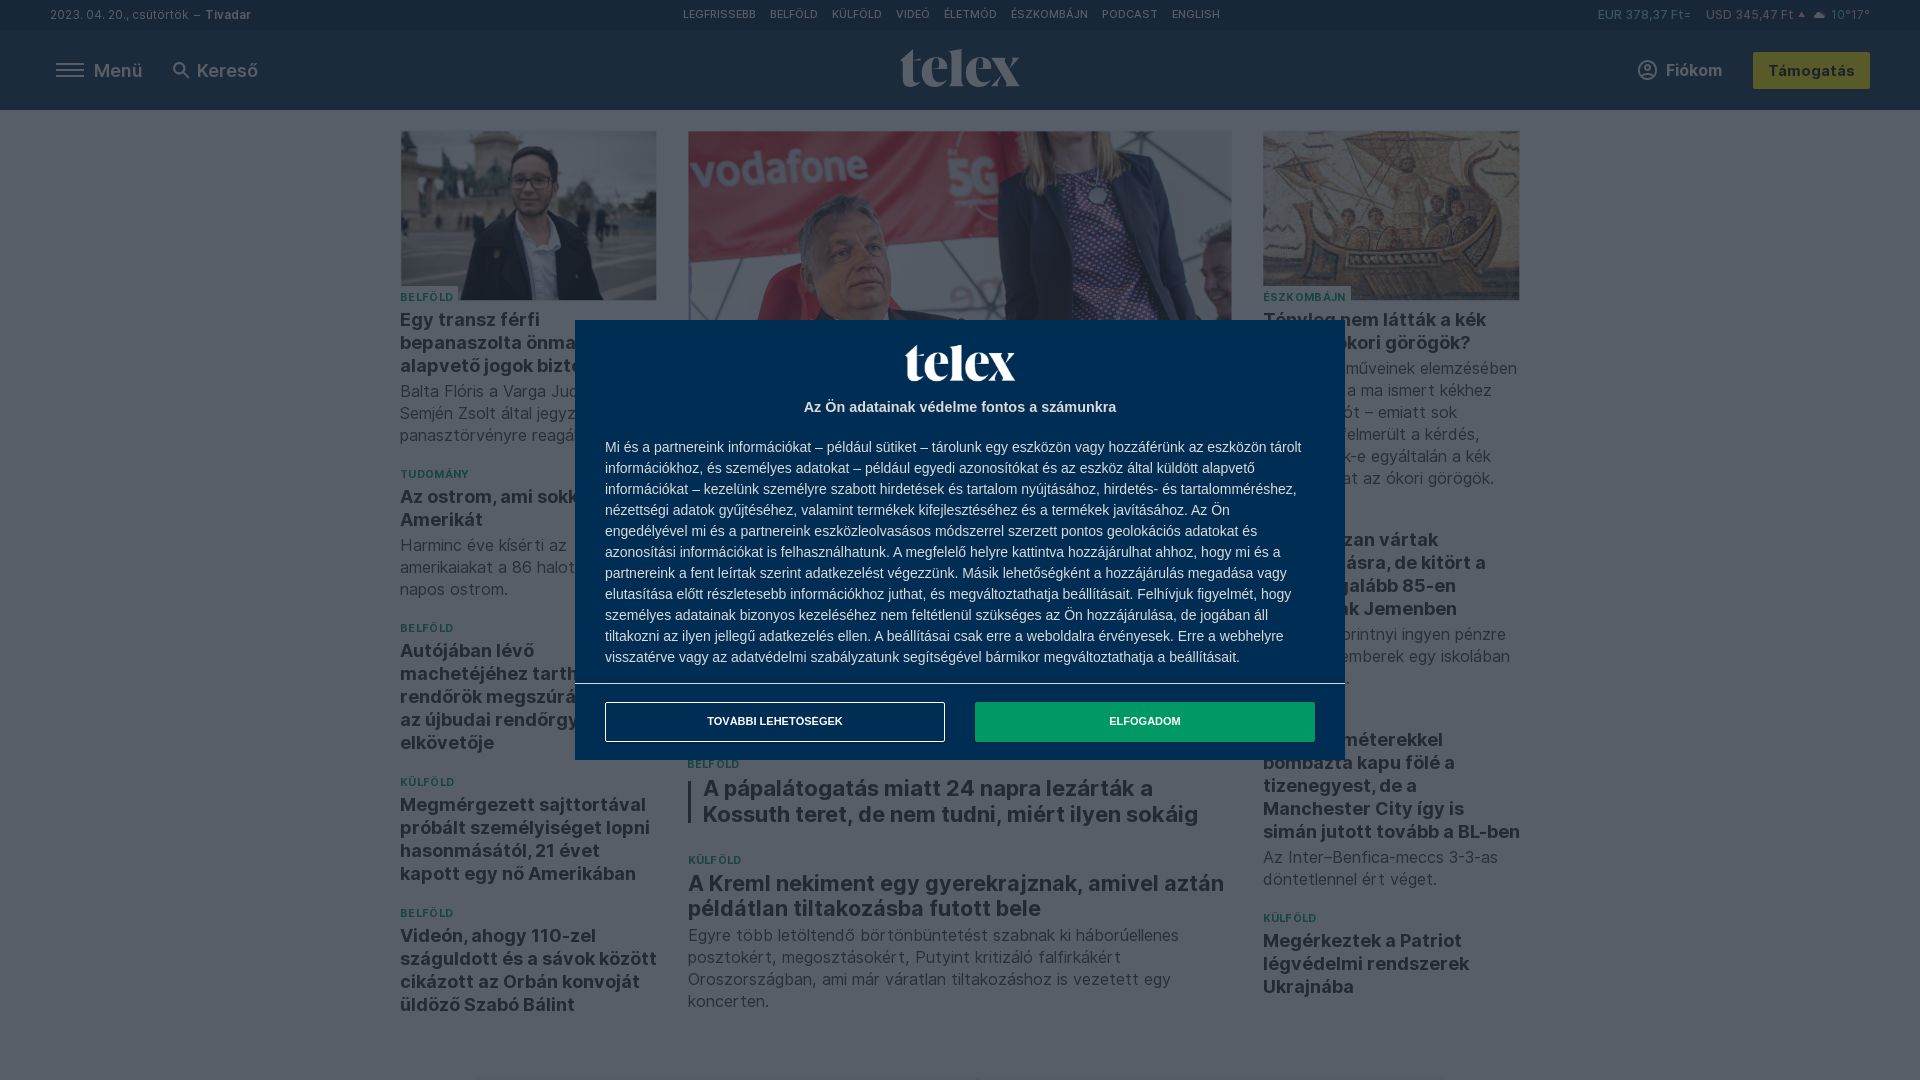 вебсайт telex.hu Є   ONLINE